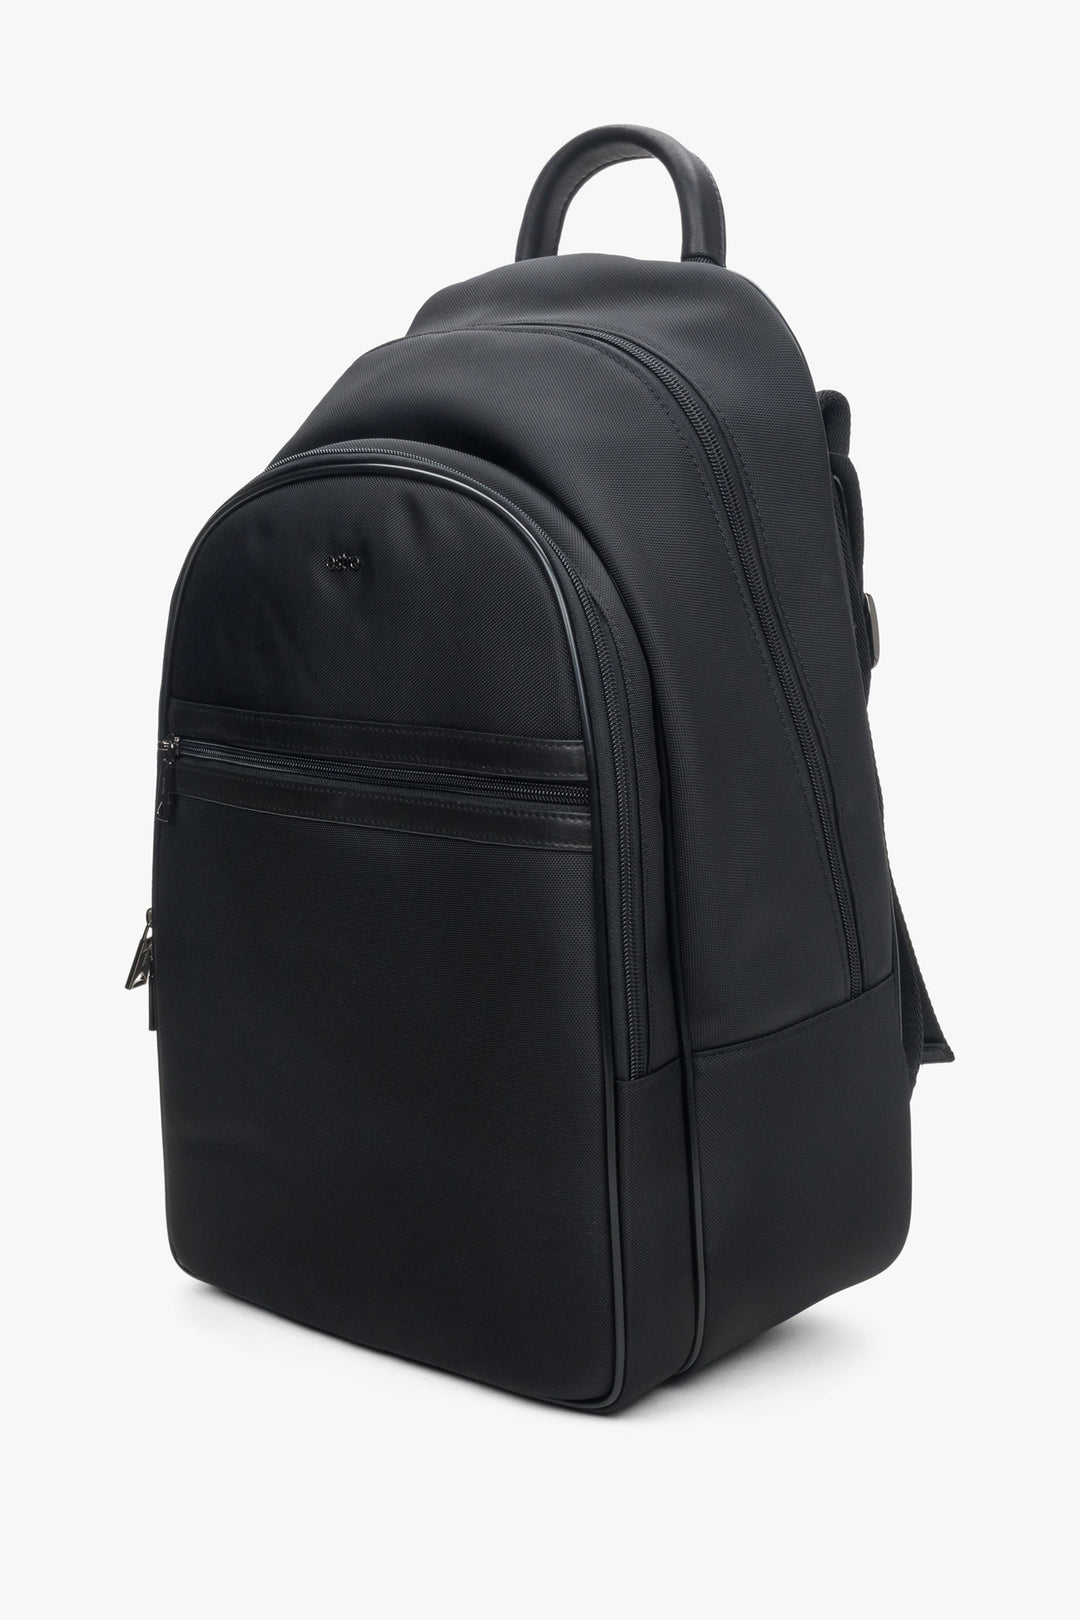 Men's large black backpack with adjustable shoulder straps by Estro.